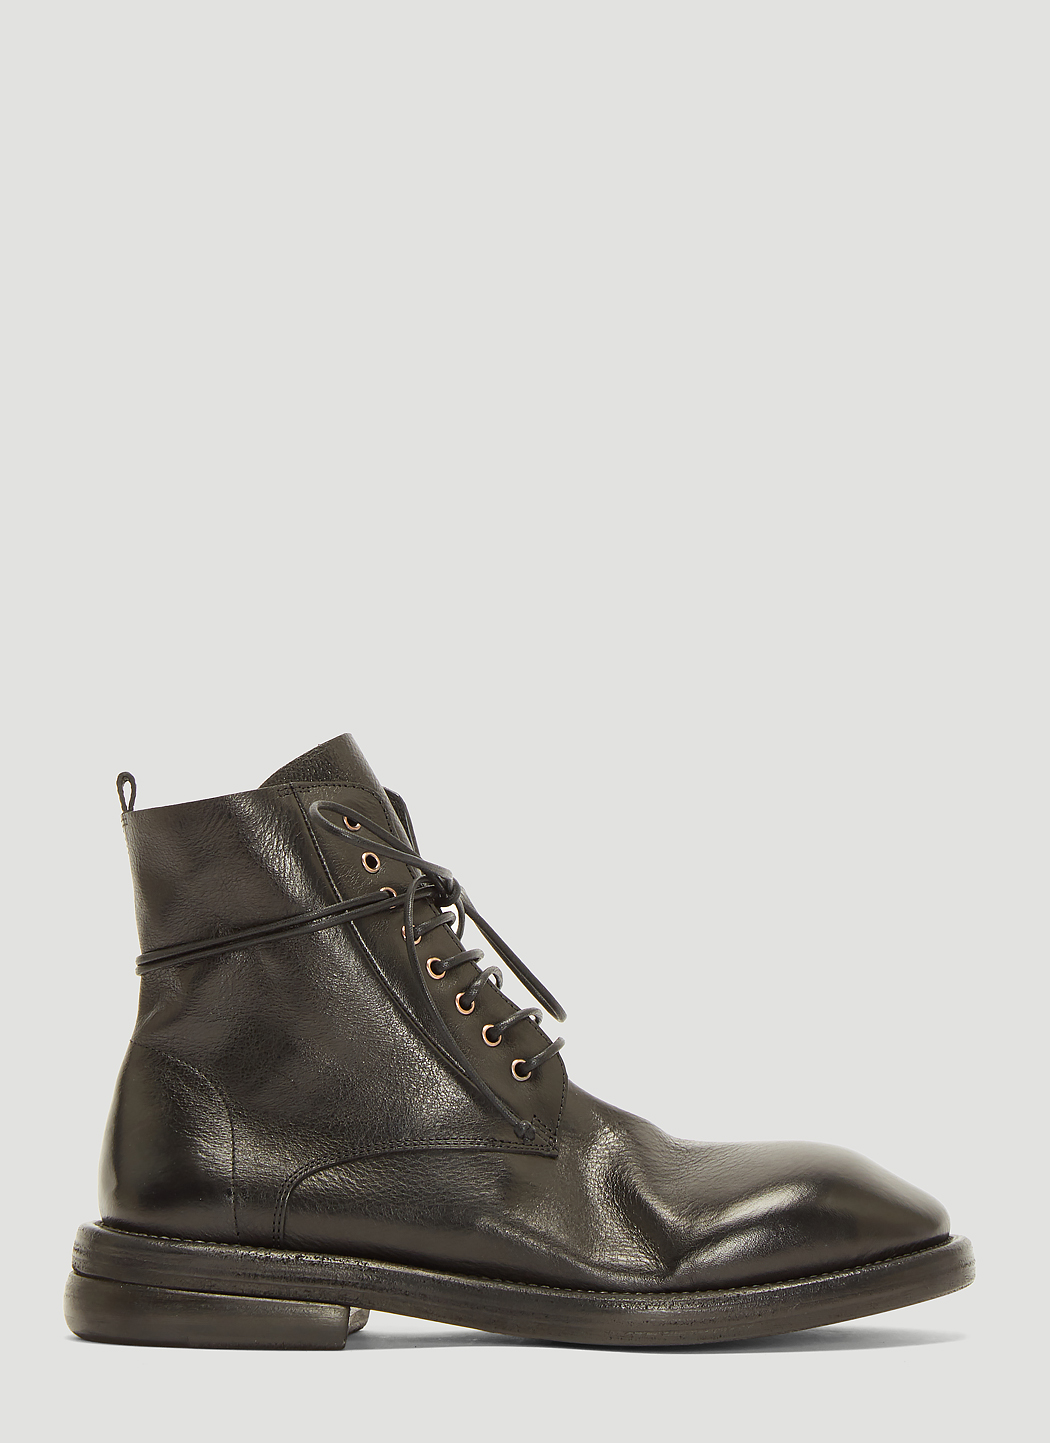 Marsèll Dodone Boots in Black | LN-CC